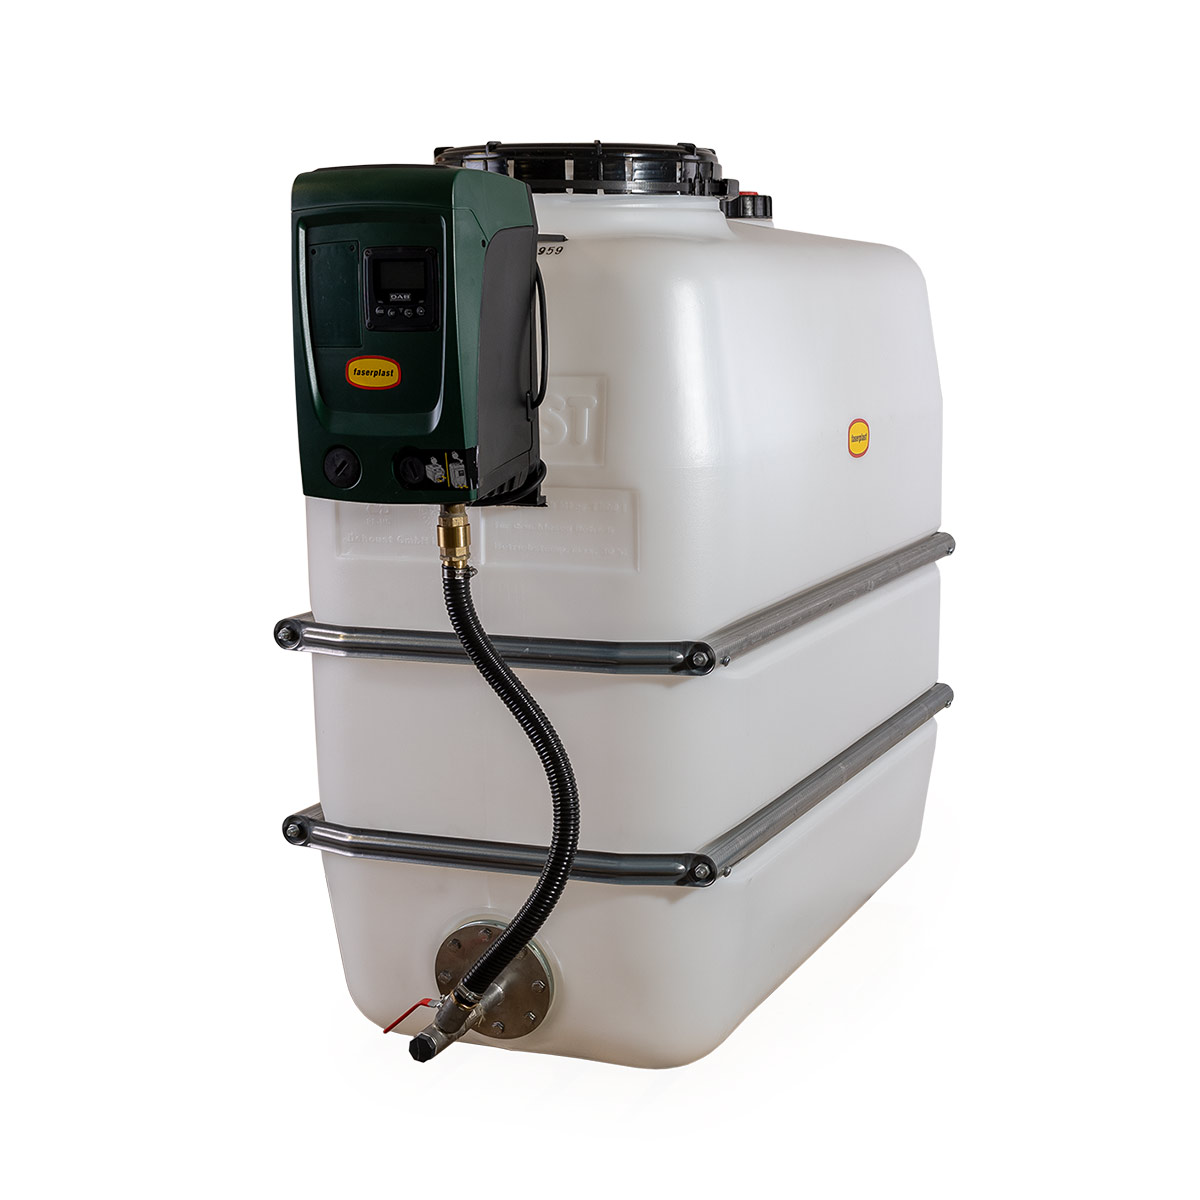 Hauswasseranlage HaWa, 1100 l, mit Pumpe e.sybox mini 3, 4800 l/h